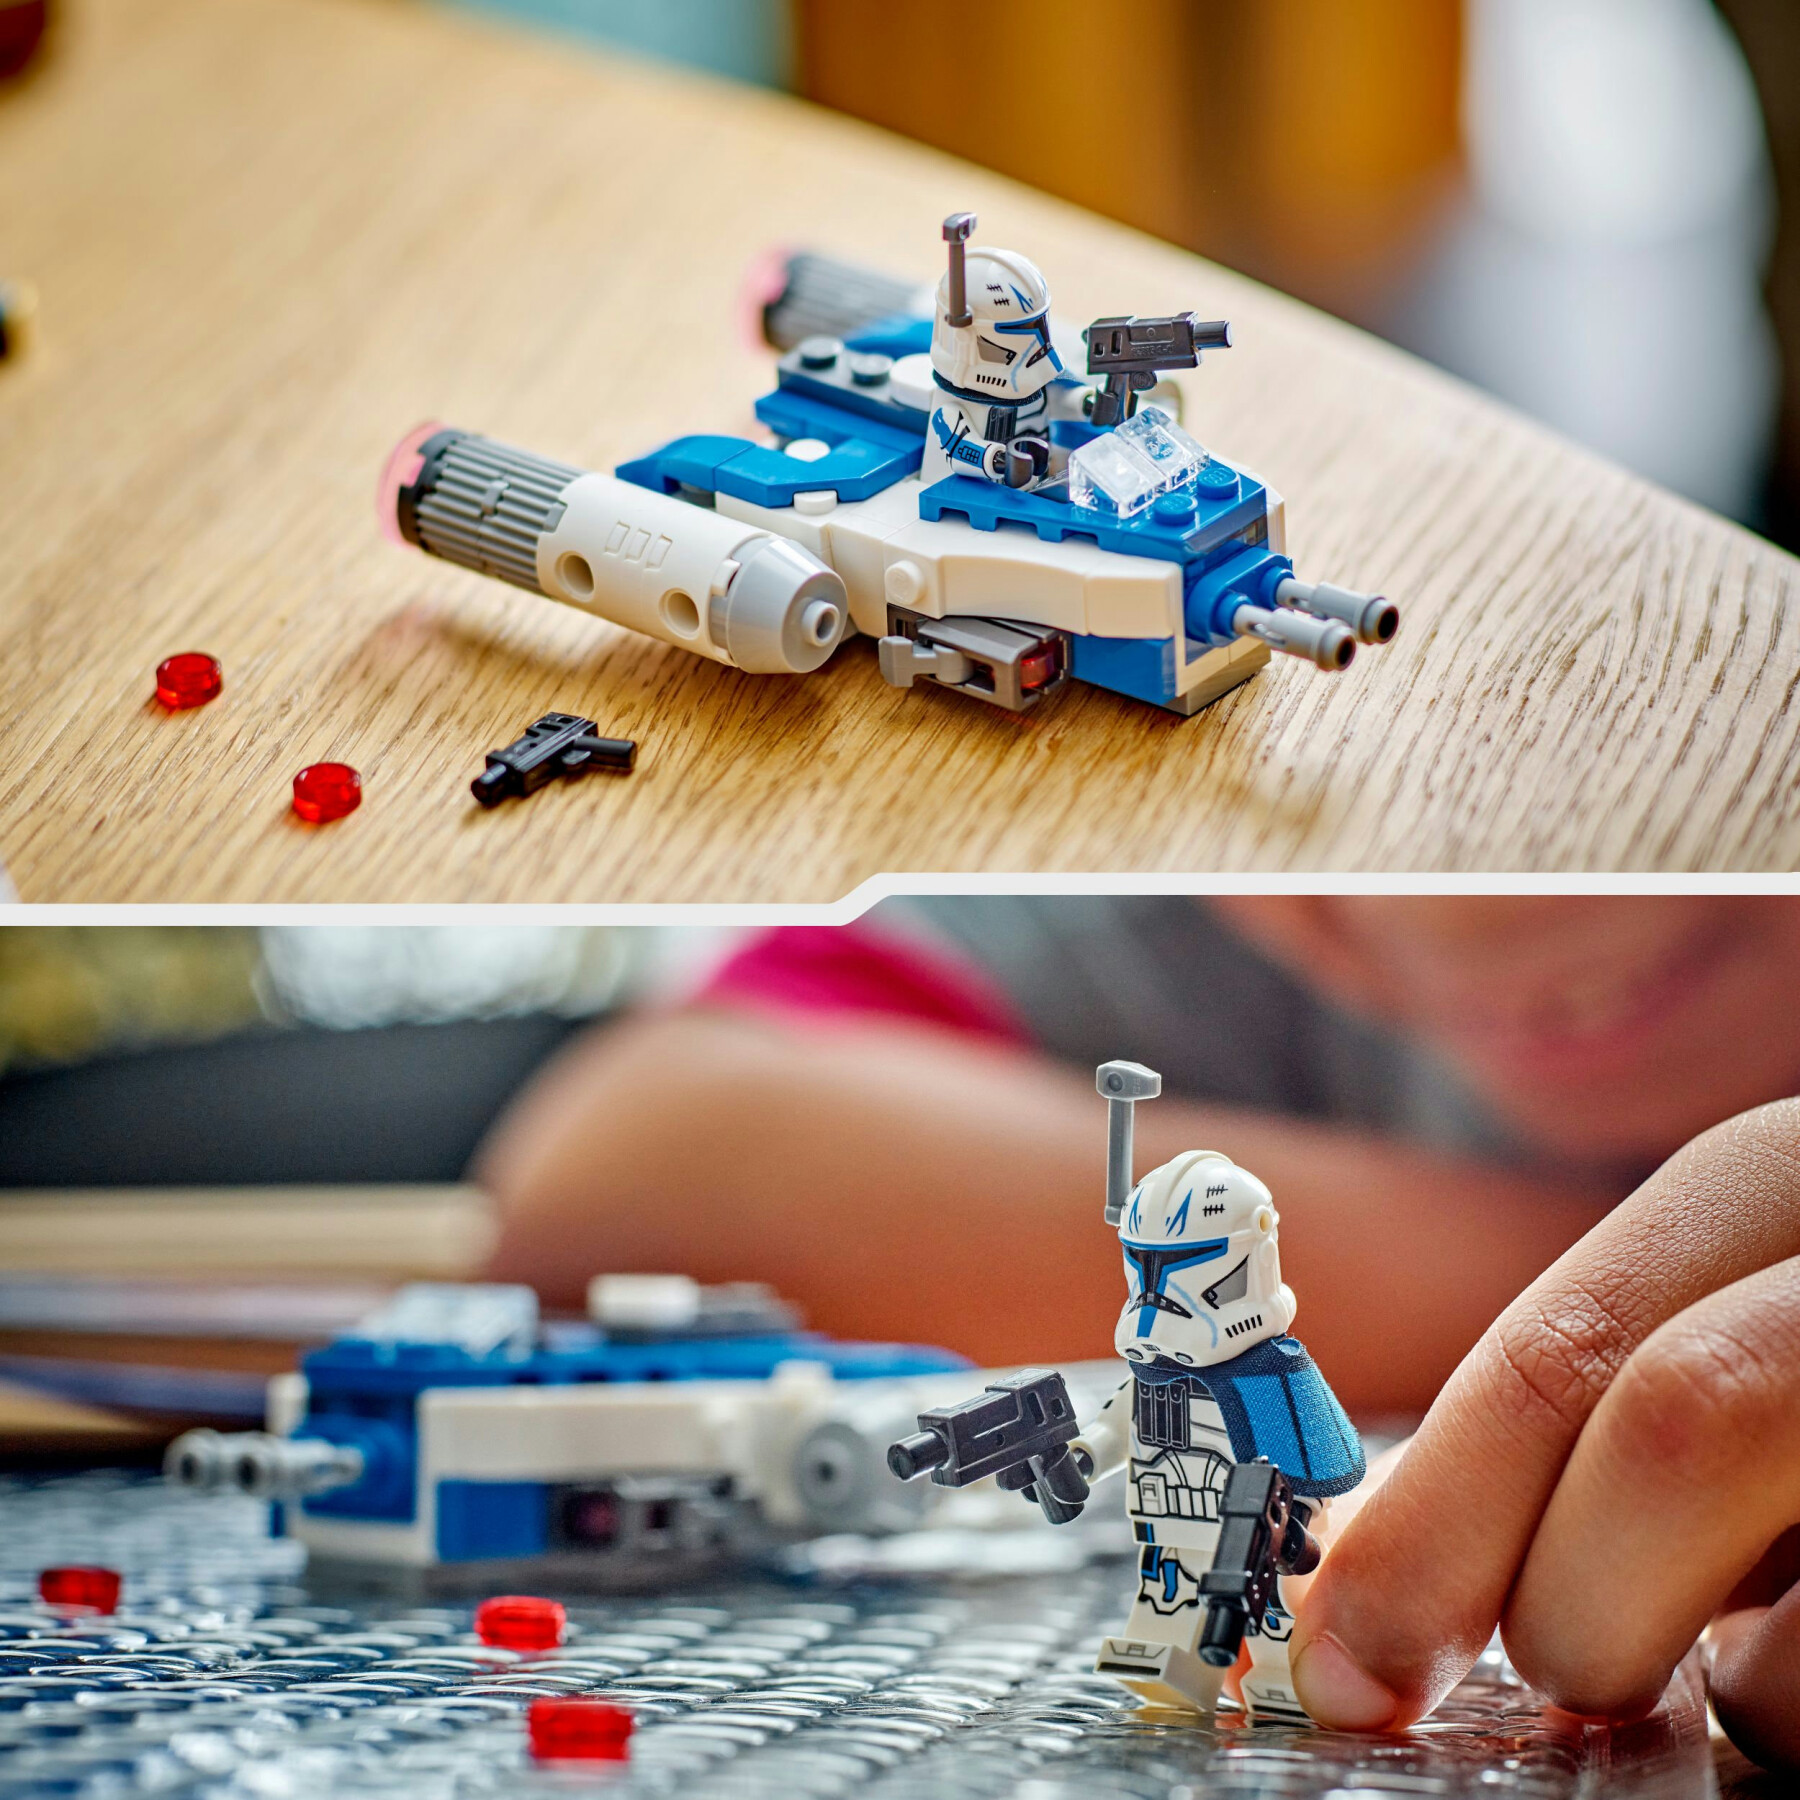 Lego star wars 75391 microfighter y-wing di captain rex, astronave giocattolo da collezione, giochi bambini 6+, piccolo regalo - LEGO® Star Wars™